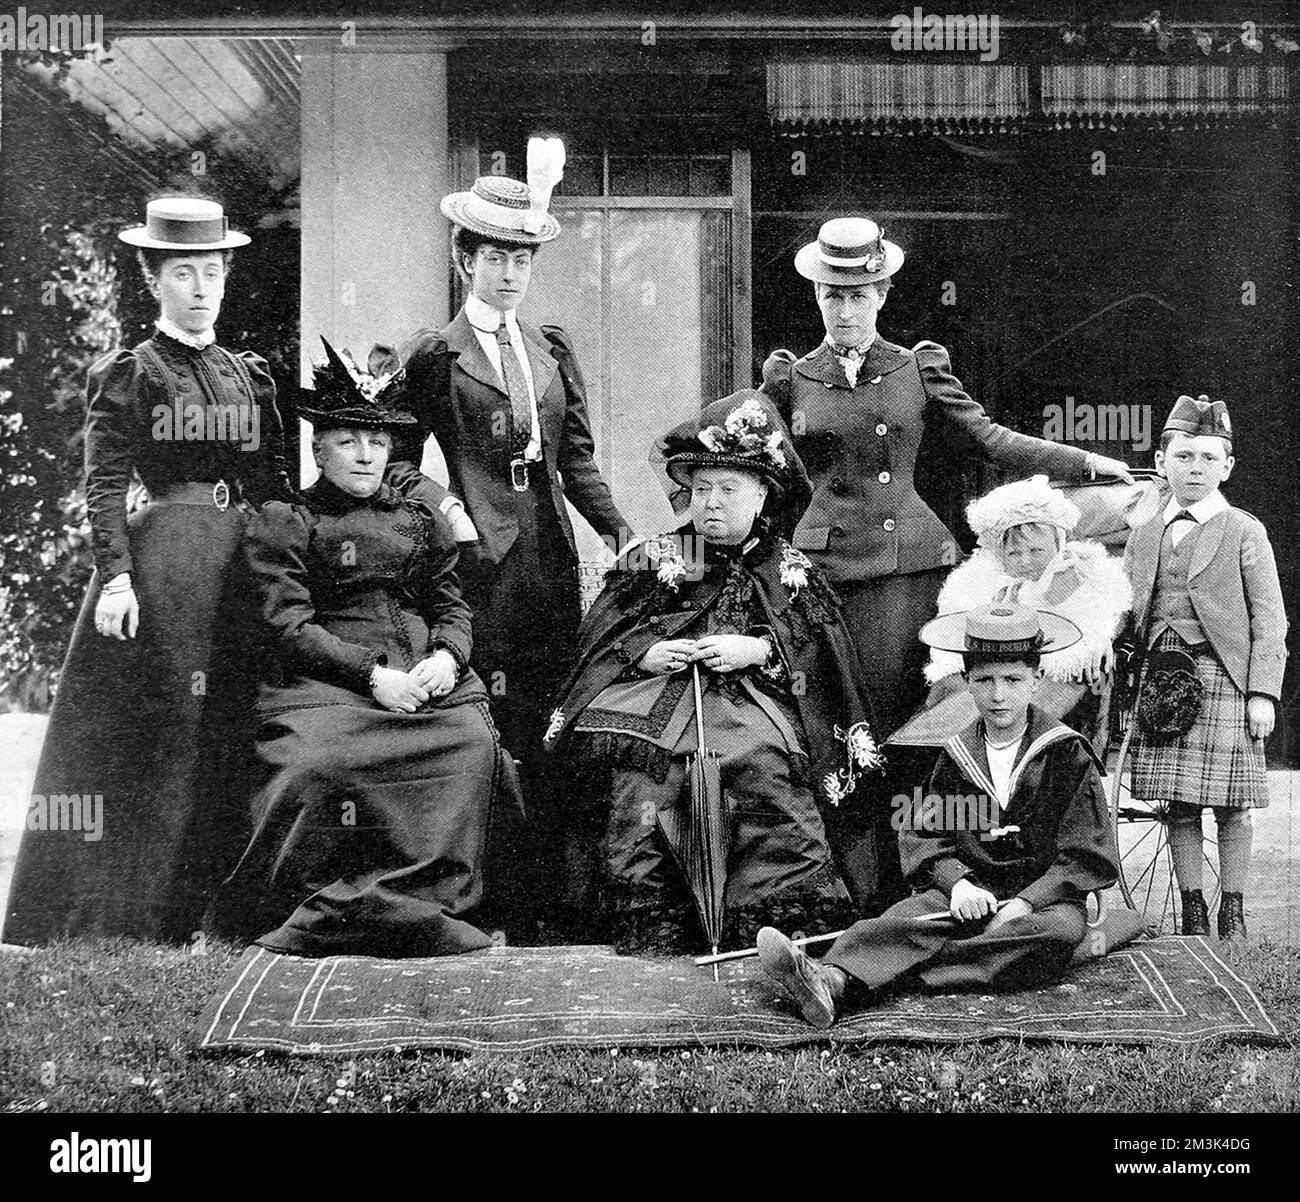 Un groupe royal à Balmoral, Écosse en 1898 montrant, de gauche à droite, la princesse Victoria du Schleswig-Holstein, la princesse Leiningen, la princesse Victoria du pays de Galles, la reine Victoria, la princesse Henry de Prusse, le prince Waldemar de Prusse et le prince Maurice de Battenberg. 1898 Banque D'Images